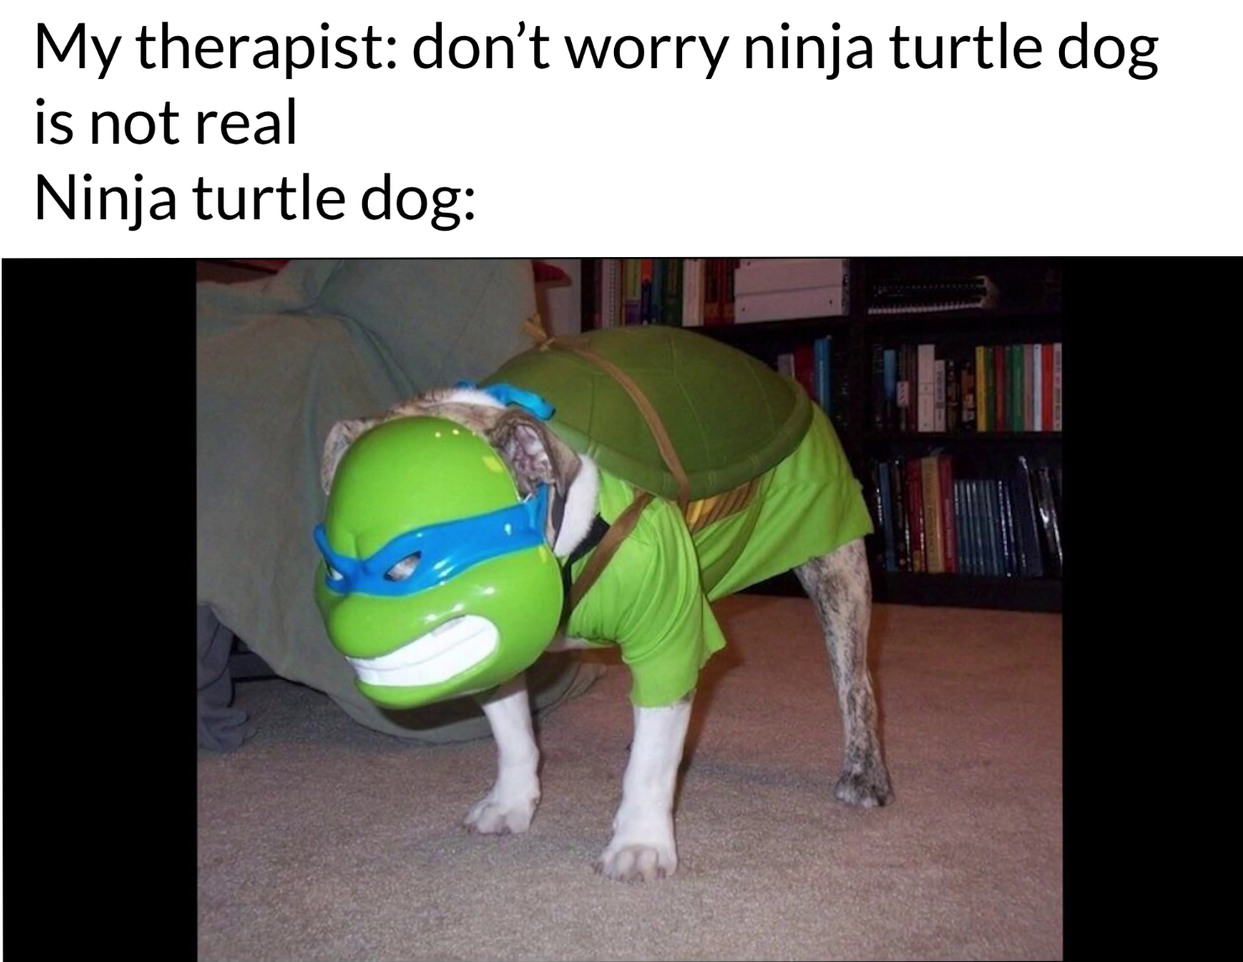 Ninja turtle dog (towards cursed images) - meme